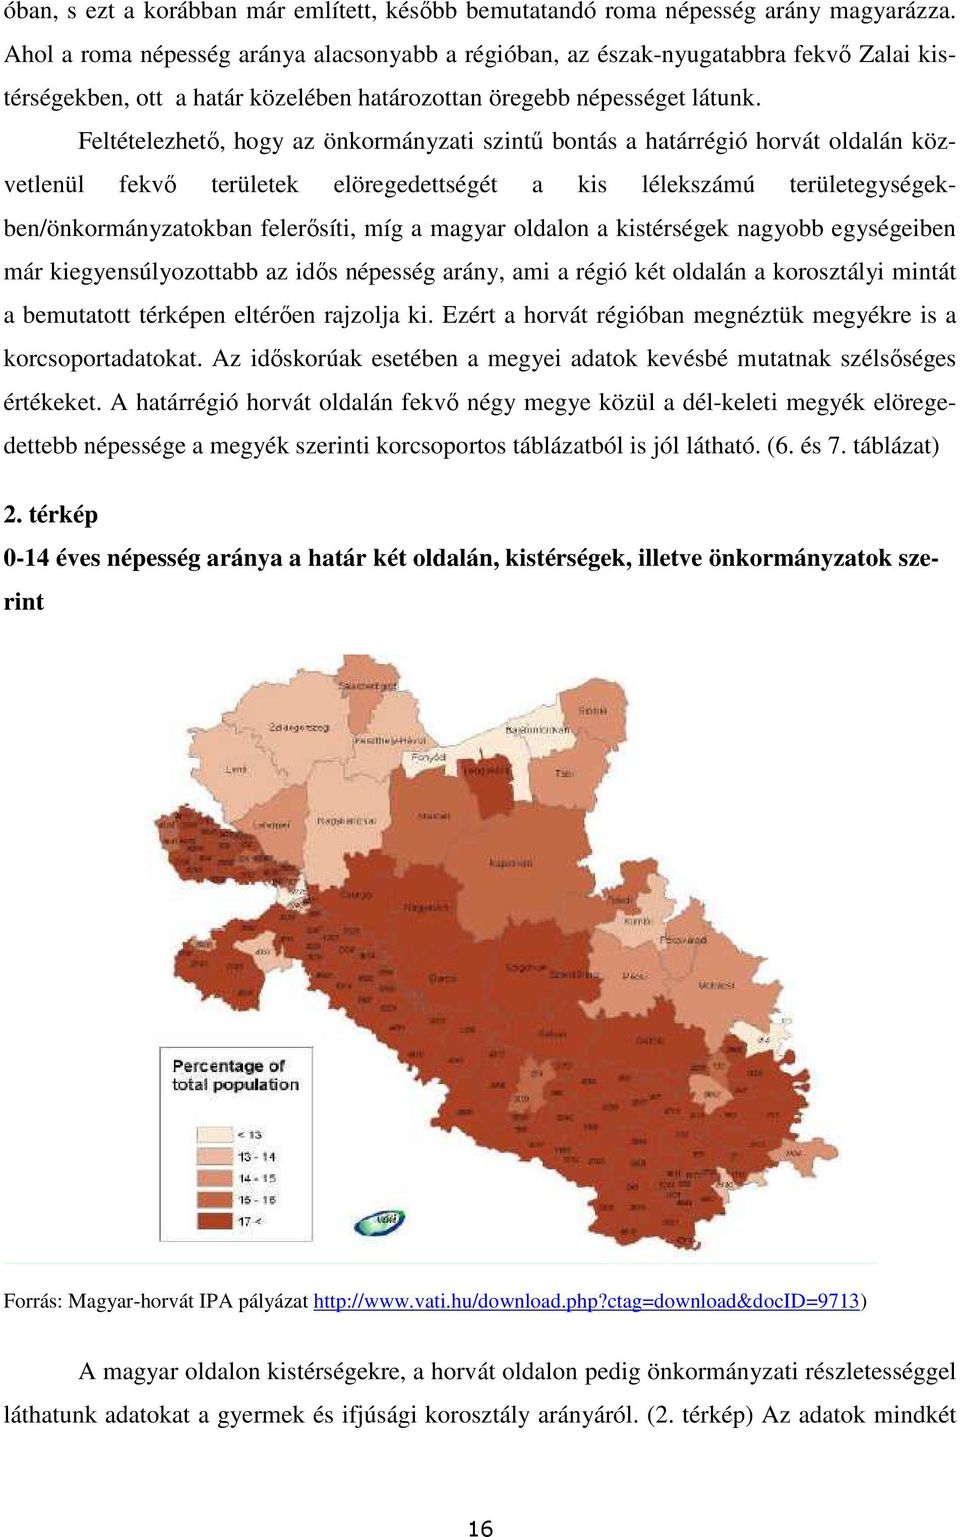 Feltételezhetı, hogy az önkormányzati szintő bontás a határrégió horvát oldalán közvetlenül fekvı területek elöregedettségét a kis lélekszámú területegységekben/önkormányzatokban felerısíti, míg a